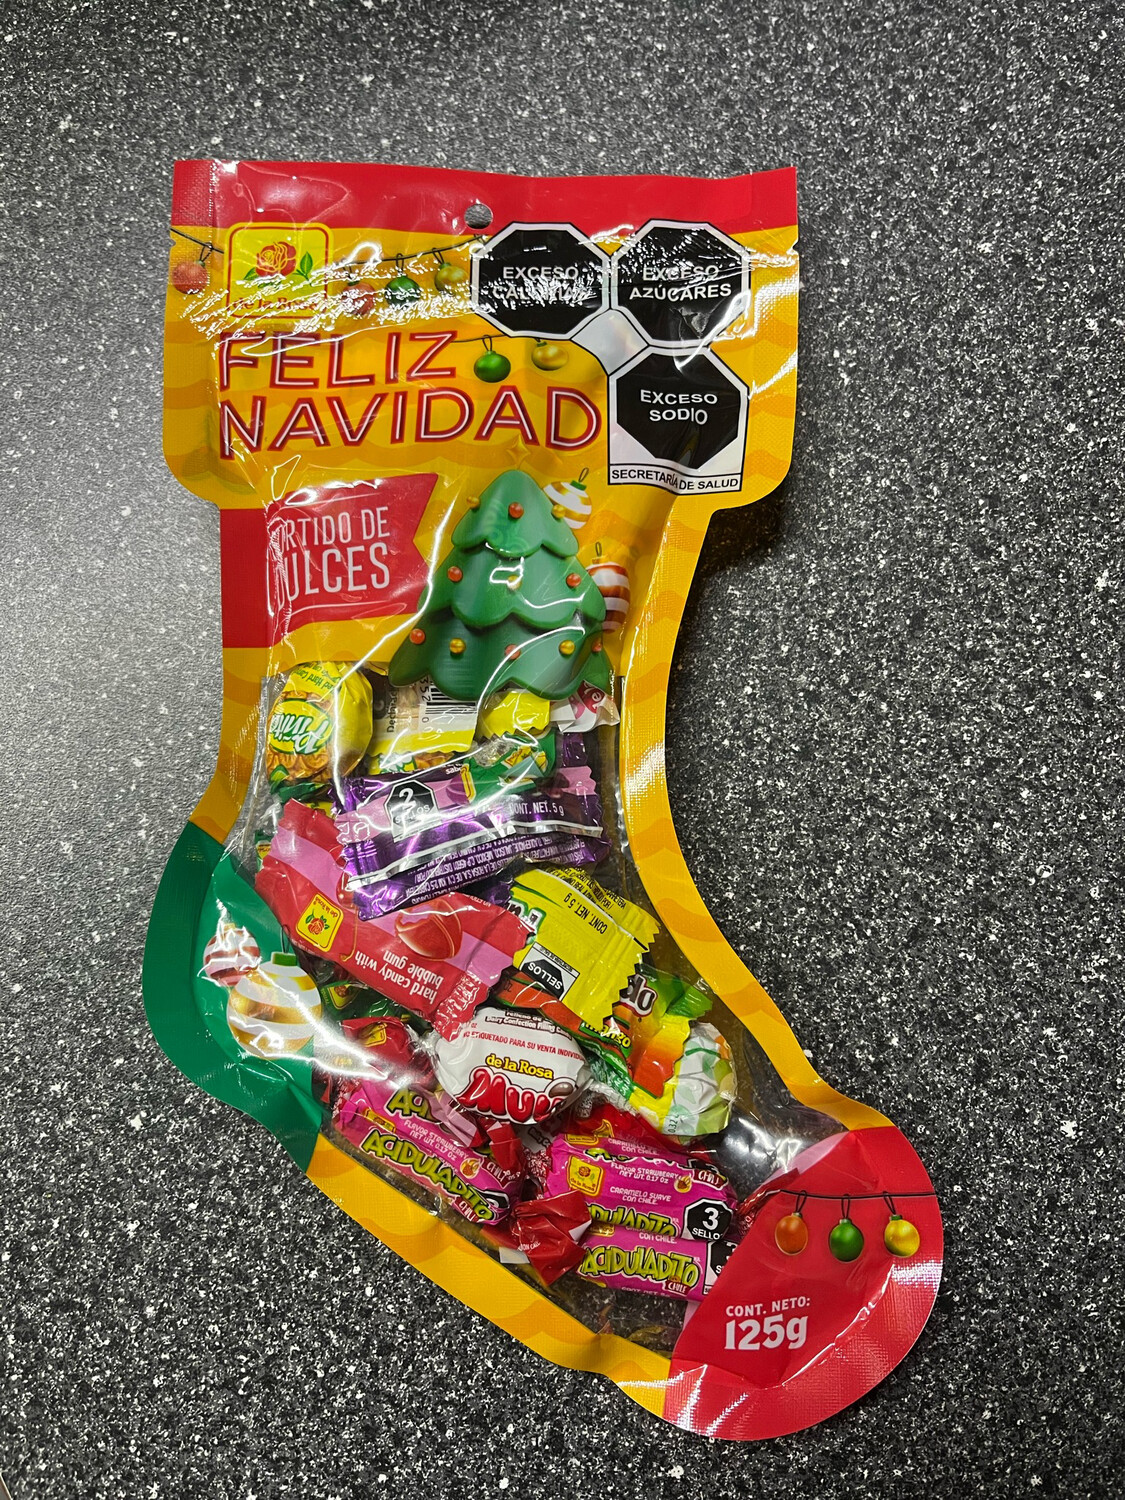 Bota Navideña Con Surtido De Dulces (Assorted Candy)